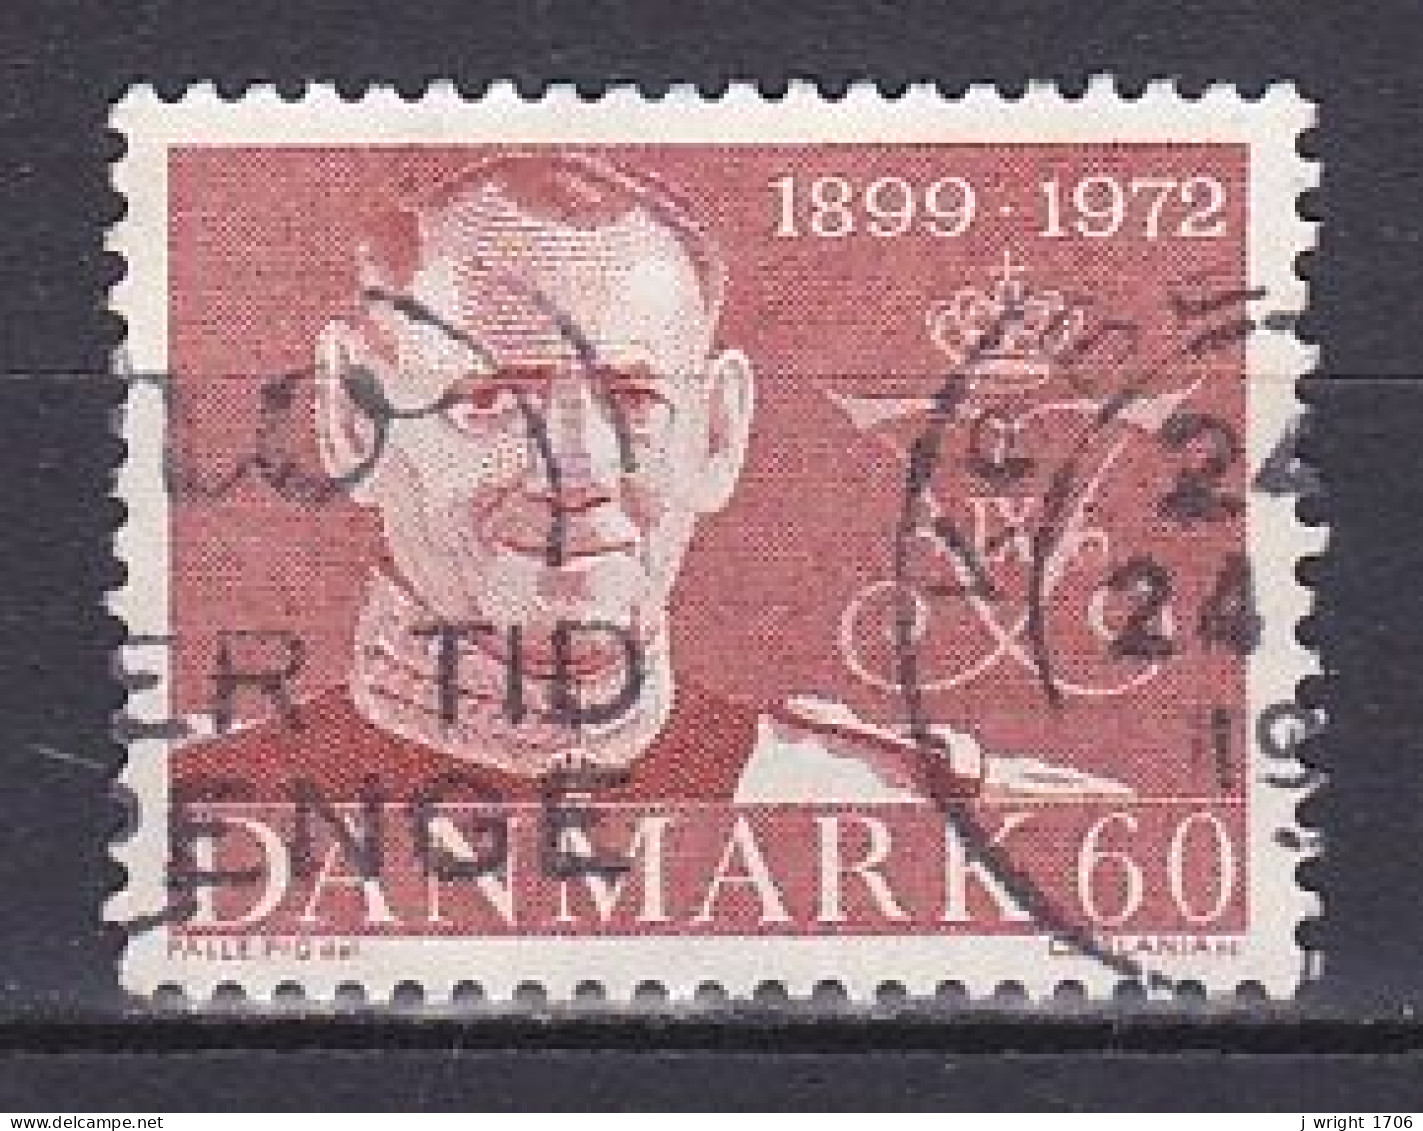 Denmark, 1972, King Frederik IX Memoriam, 60ø, USED - Gebraucht